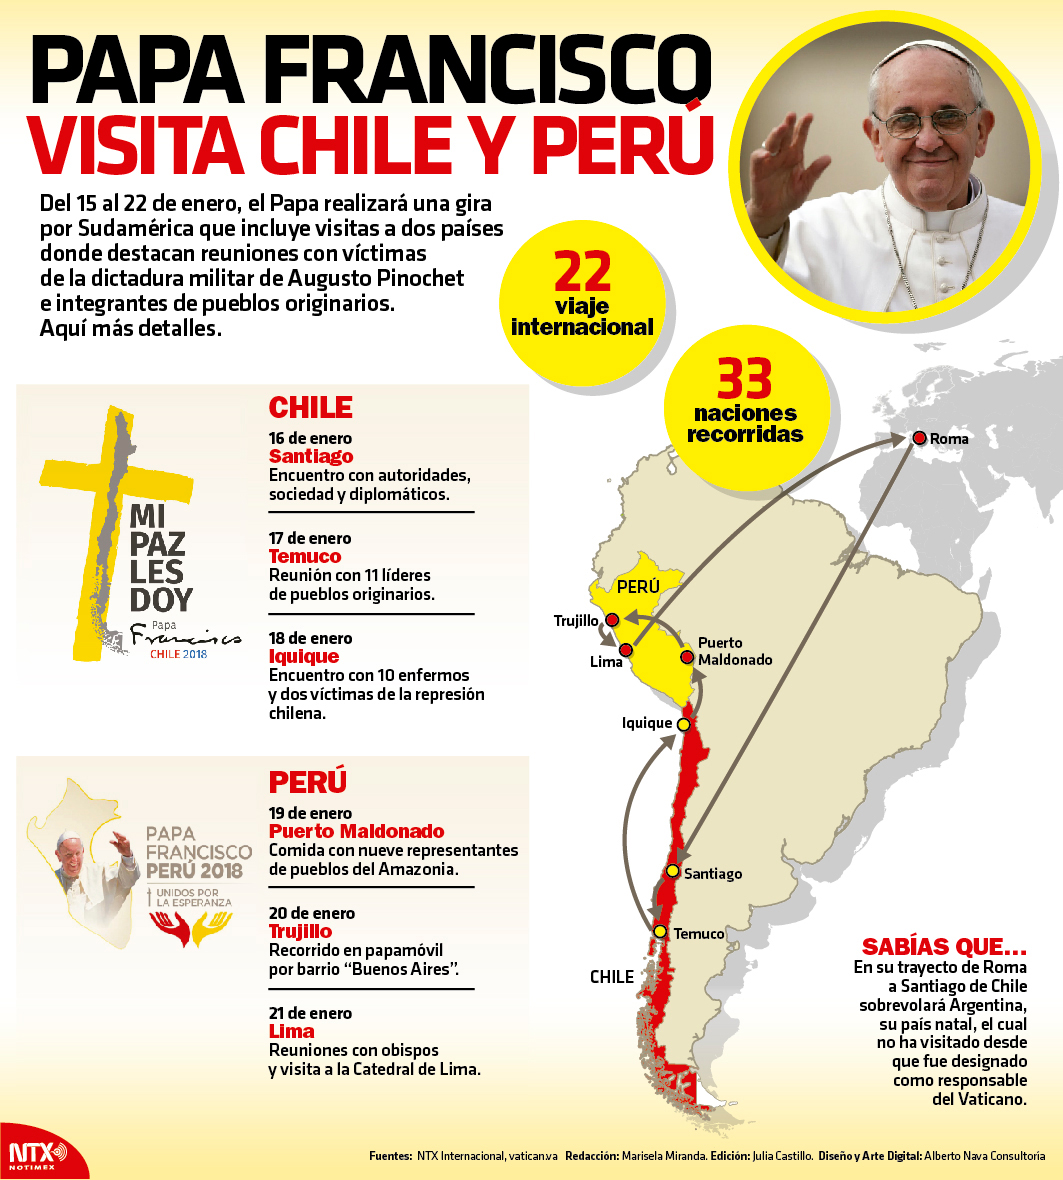 Papa Francisco visita Chile y Per